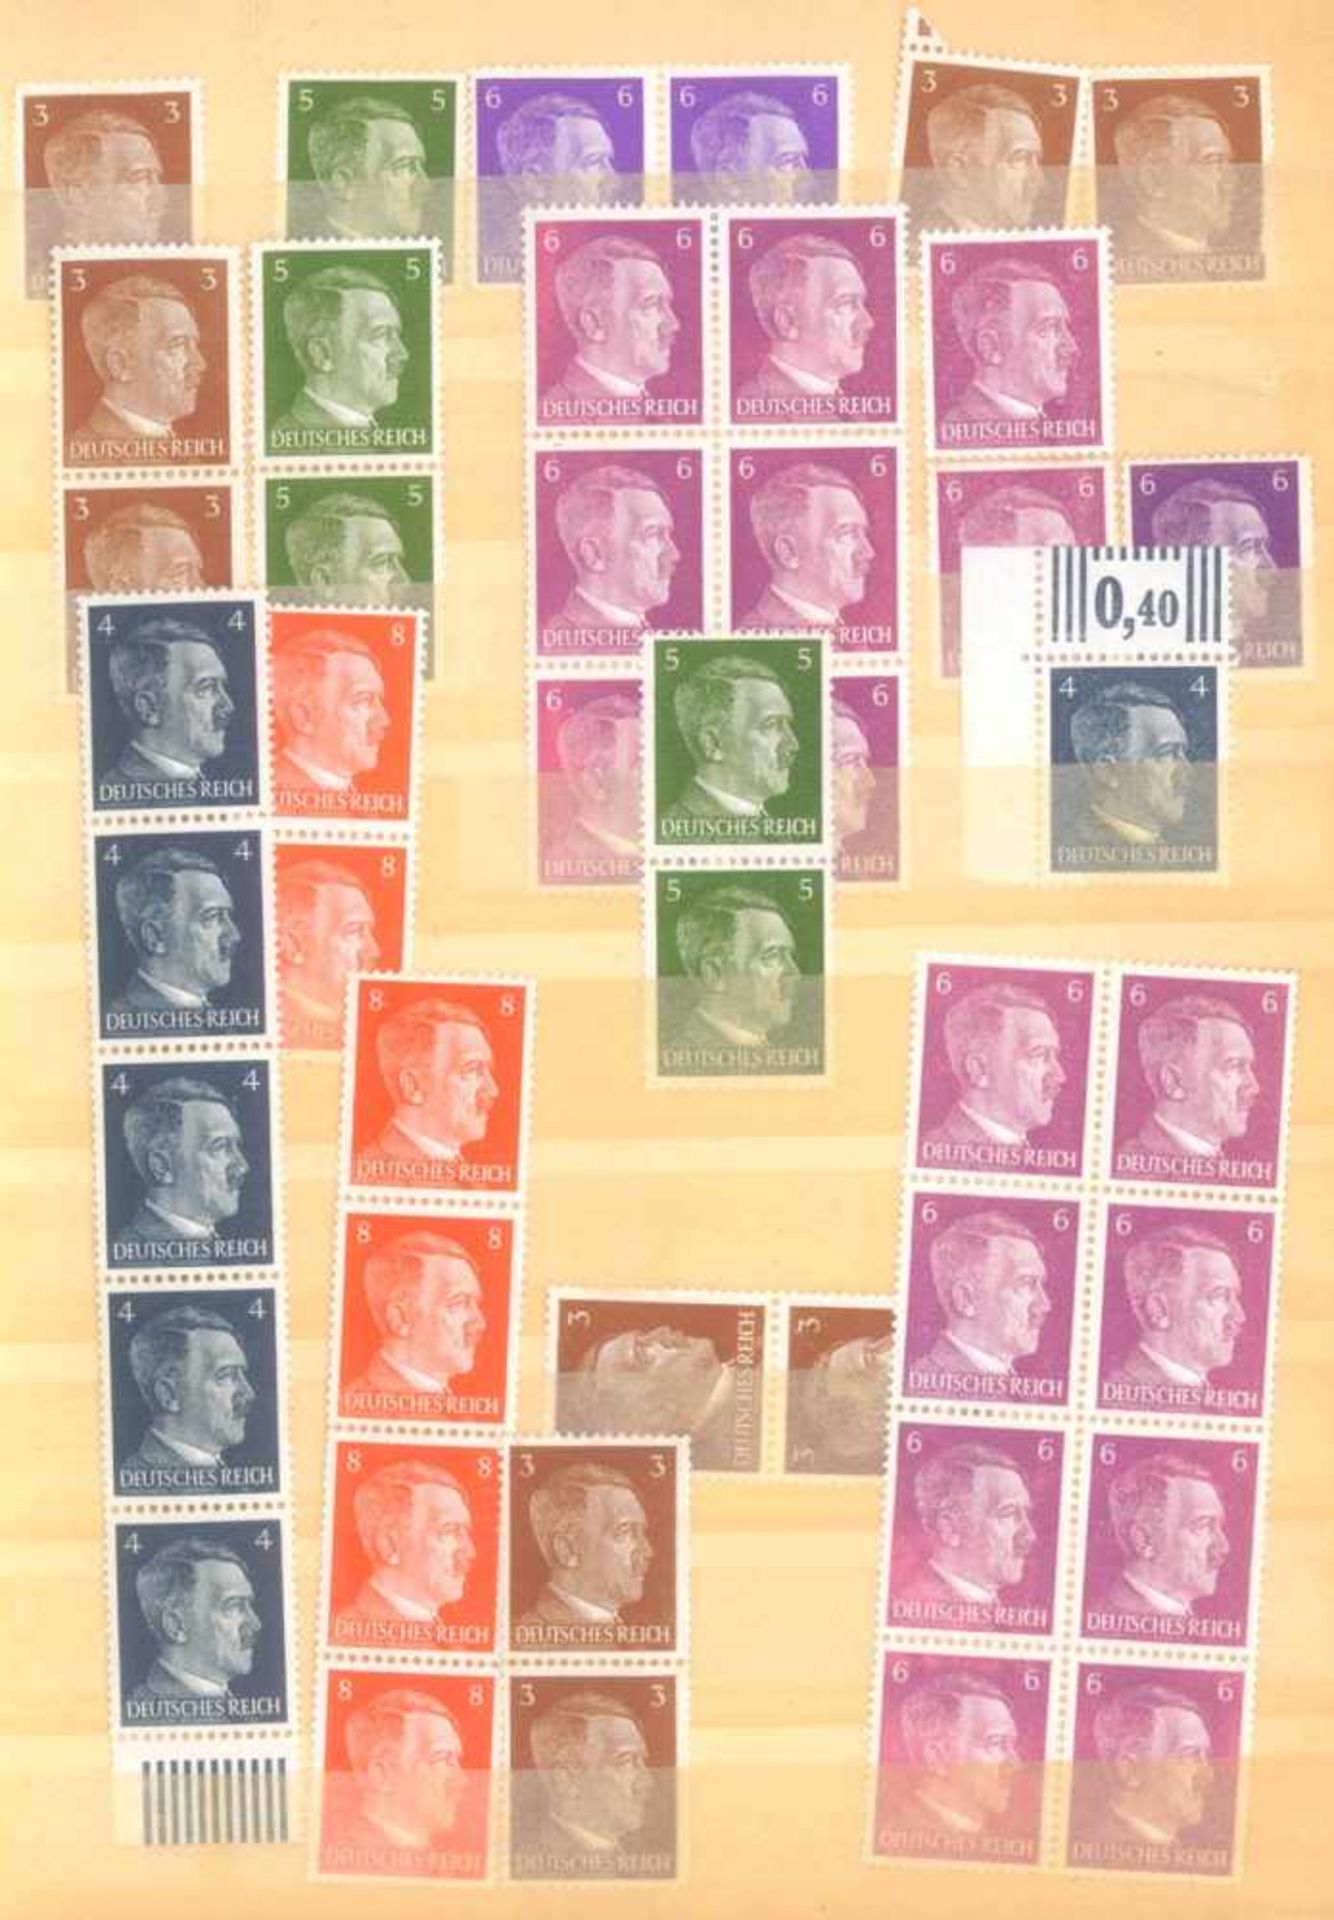 FRANKENTHALER NACHLASSuriger Nachlass mit Briefmarken und Belegen. Dabei DeutschesReich, altes - Image 17 of 46